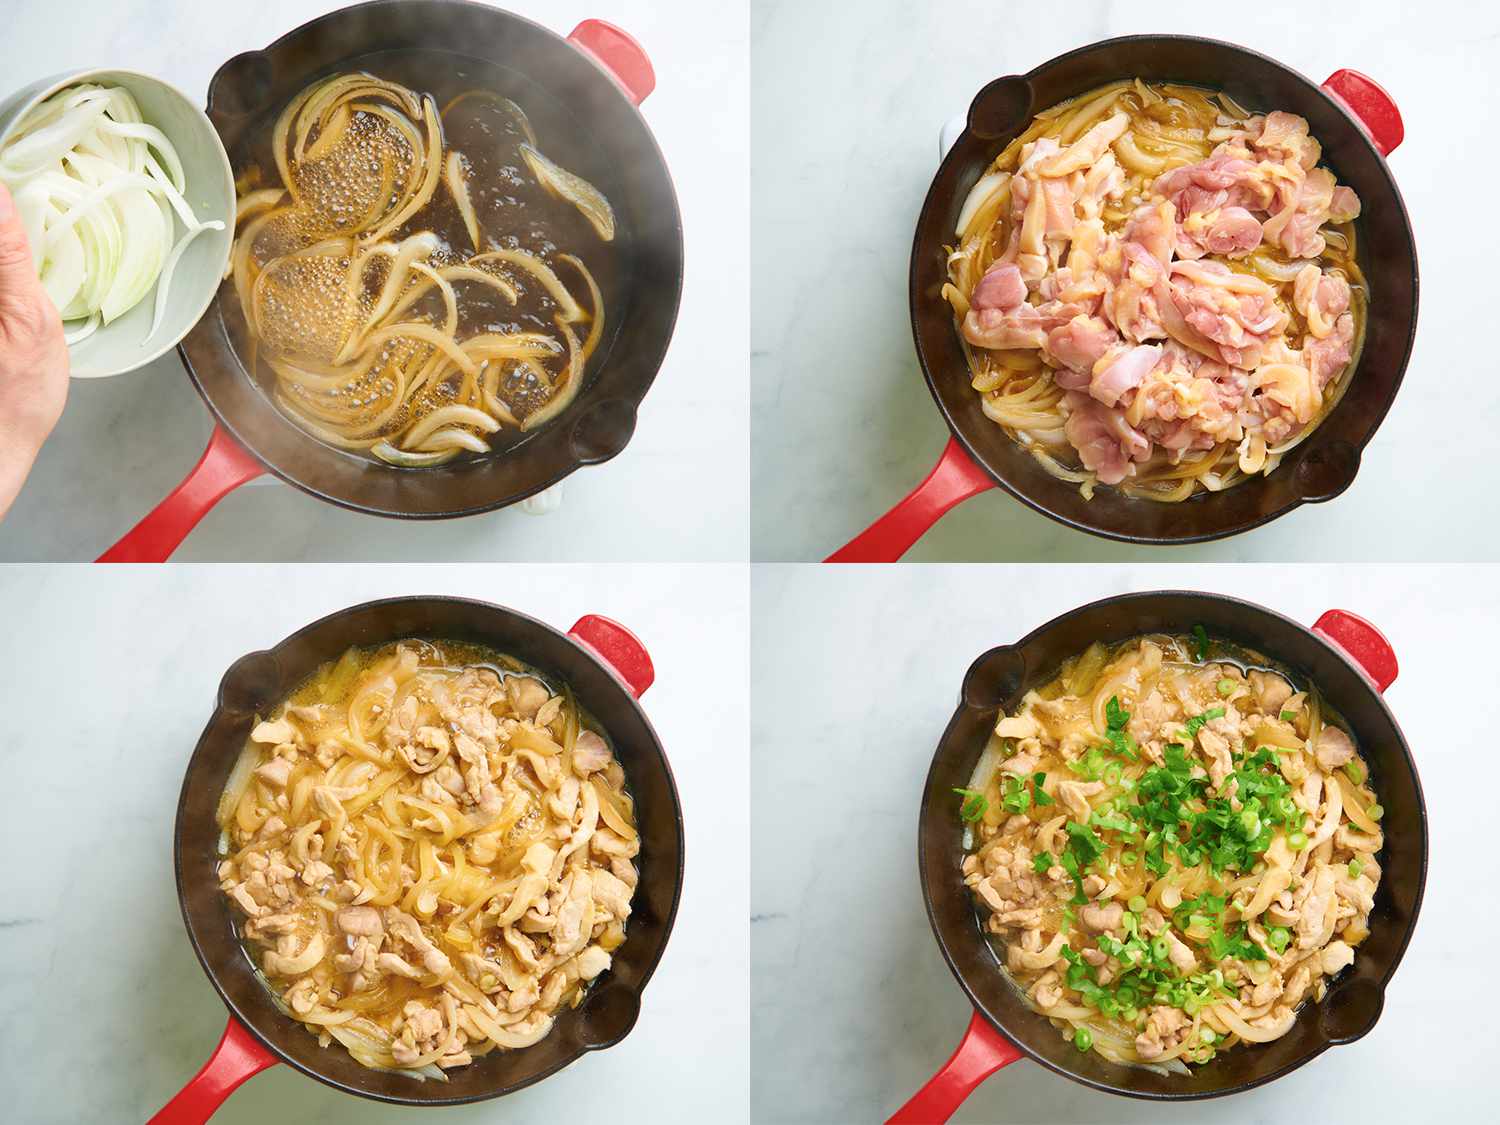 四幅拼贴画展示了最初的oyakodon烹饪步骤。左上方的图片显示了洋葱在肉汤中煮熟。右上方的图片显示了鸡肉，生的，加入洋葱锅。左下角的图片显示了锅里煮好的鸡肉、洋葱和肉汤。右下角的图片显示了煮好的鸡肉、洋葱和上面有葱花的肉汤。gydF4y2Ba